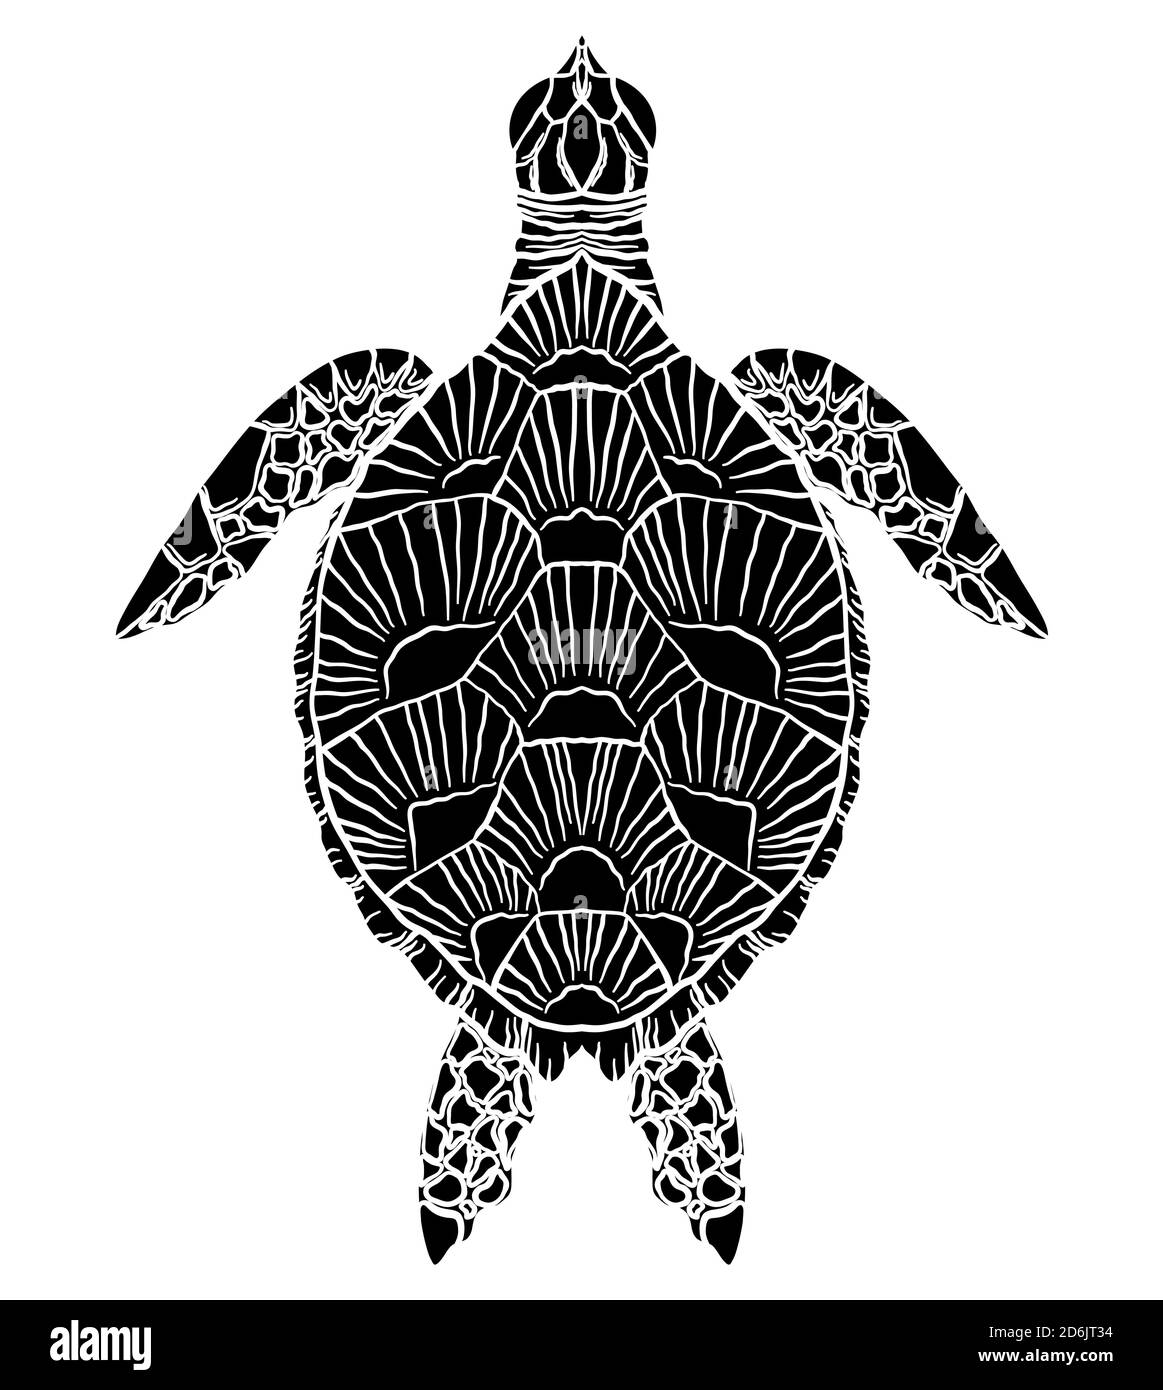 Silhouette noire et blanche d'une tortue de mer vue de dessus. L'objet est séparé de l'arrière-plan. Elément vectoriel pour les articles, logos, icônes et votre de Illustration de Vecteur